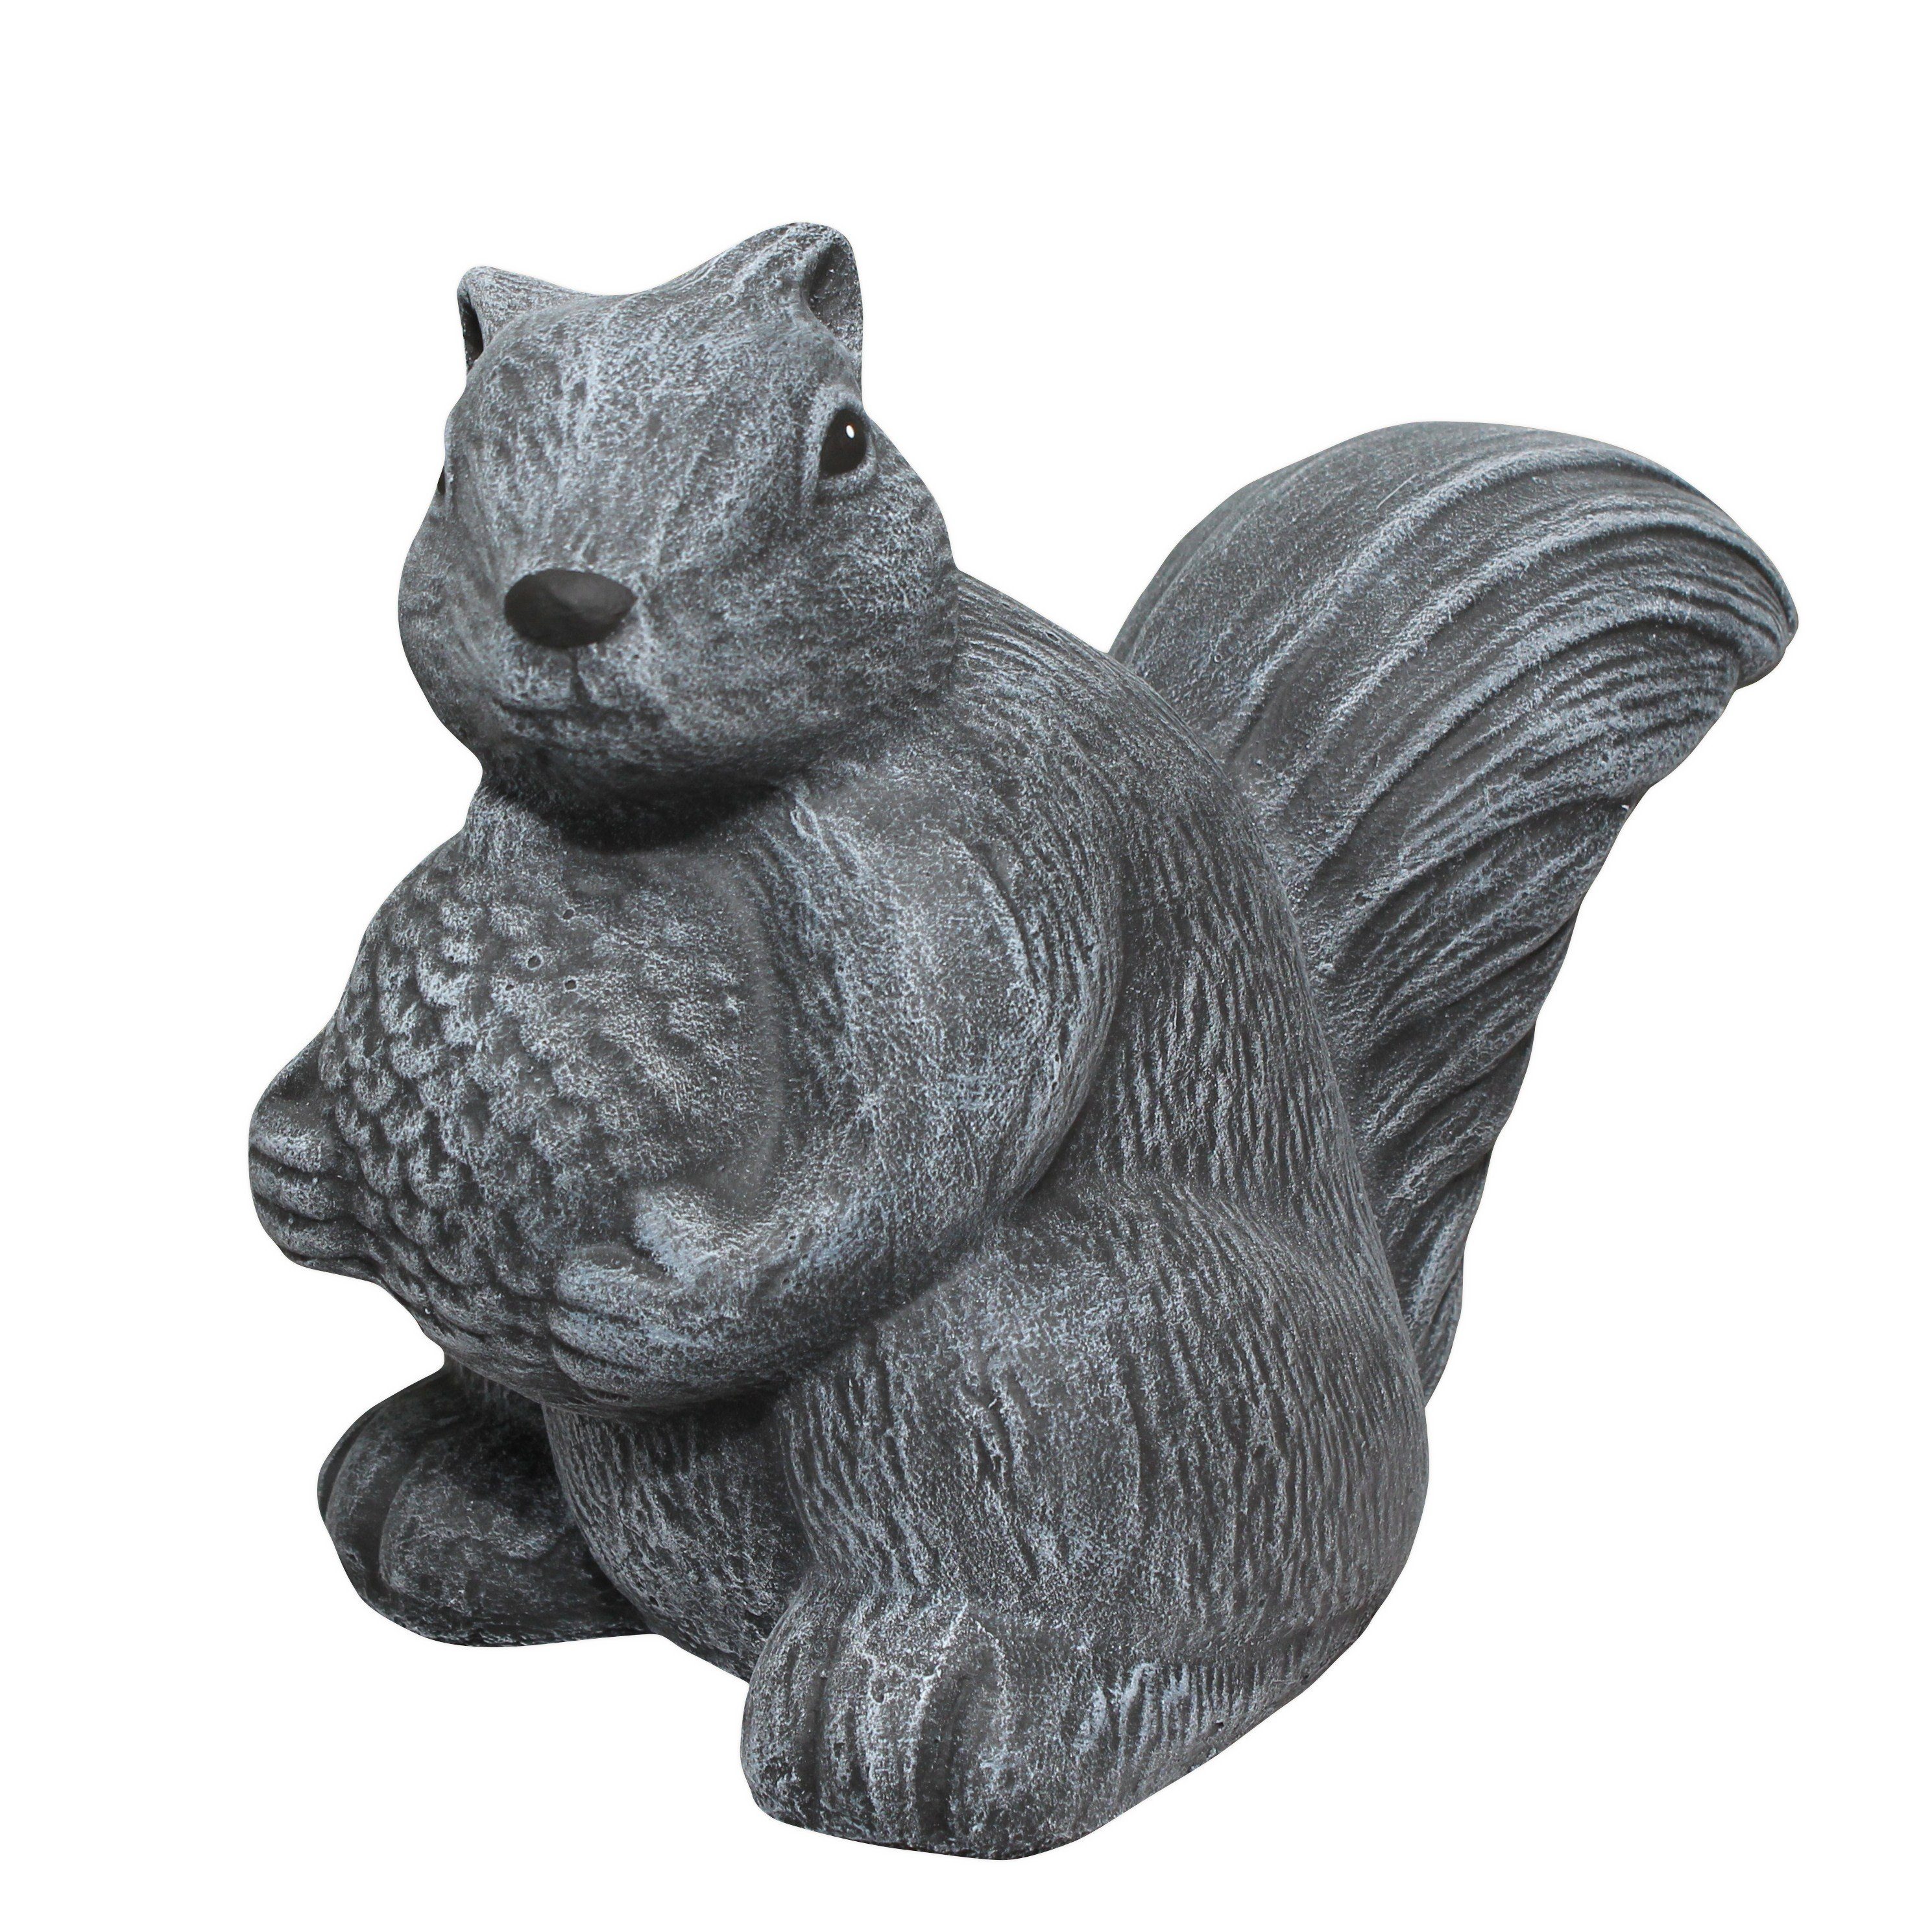 Tiefes Kunsthandwerk Gartenfigur Steinfigur Eichhörnchen stehend - als Dekofigur für Haus und Garten, frostsicher, winterfest, Made in Germany grau